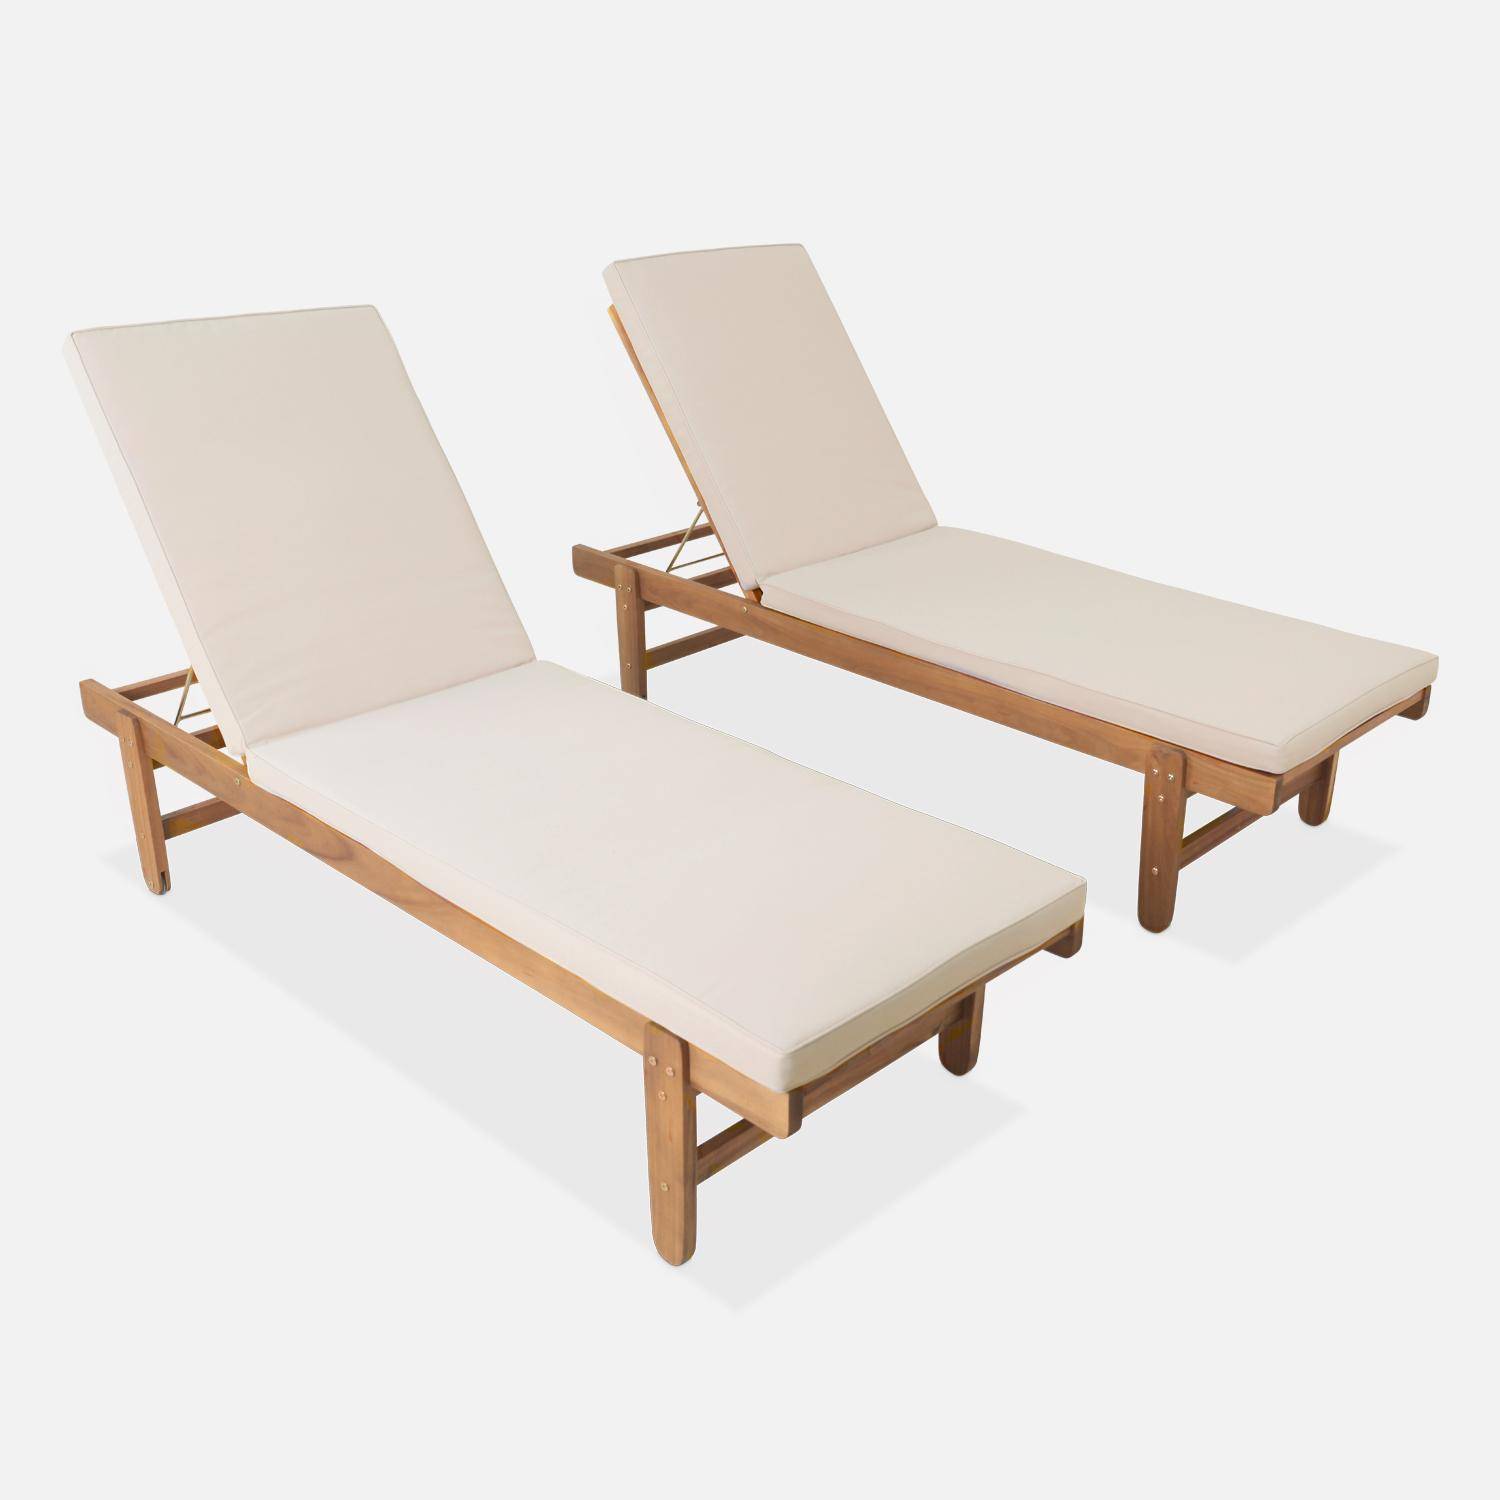 Set van 2 ligstoelen van FSC Acacia – AREQUIPA – Ligstoelen met beige kussen en wielen, multipositioneel Photo1